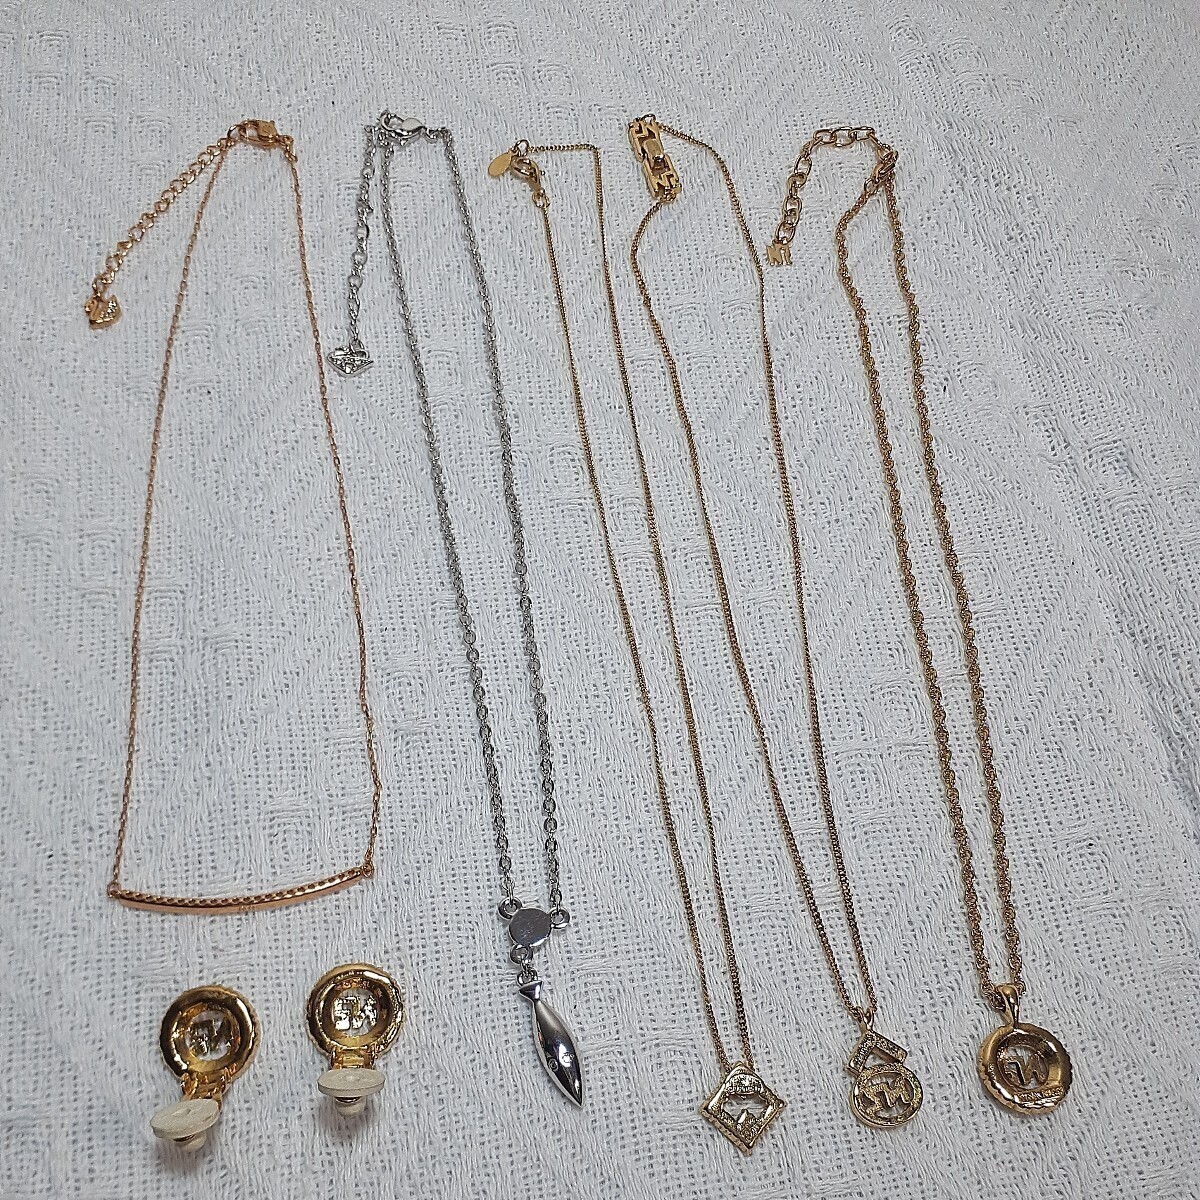 GIVENCHY necklace.SWAROVSKI necklace.NINA RICCI necklace. Nina Ricci earrings. ring. brand accessory set sale.10 point 